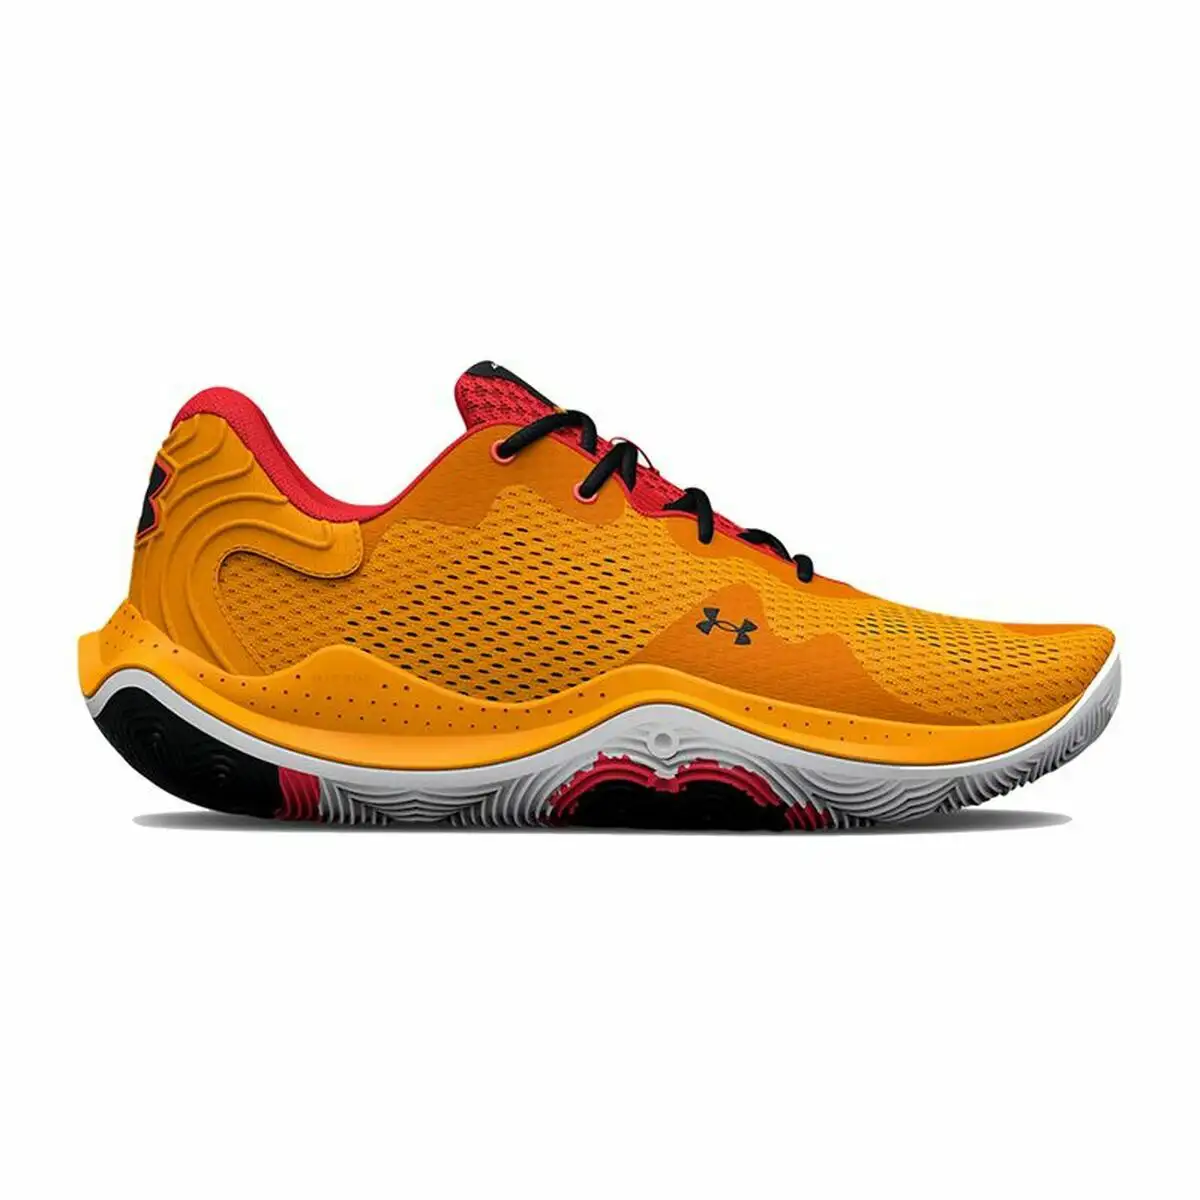 Chaussures de basket ball pour adultes under armour spawn 4 orange homme_1435. DIAYTAR SENEGAL - Où Choisir est un Plaisir Responsable. Explorez notre boutique en ligne et adoptez des produits qui reflètent notre engagement envers la durabilité.